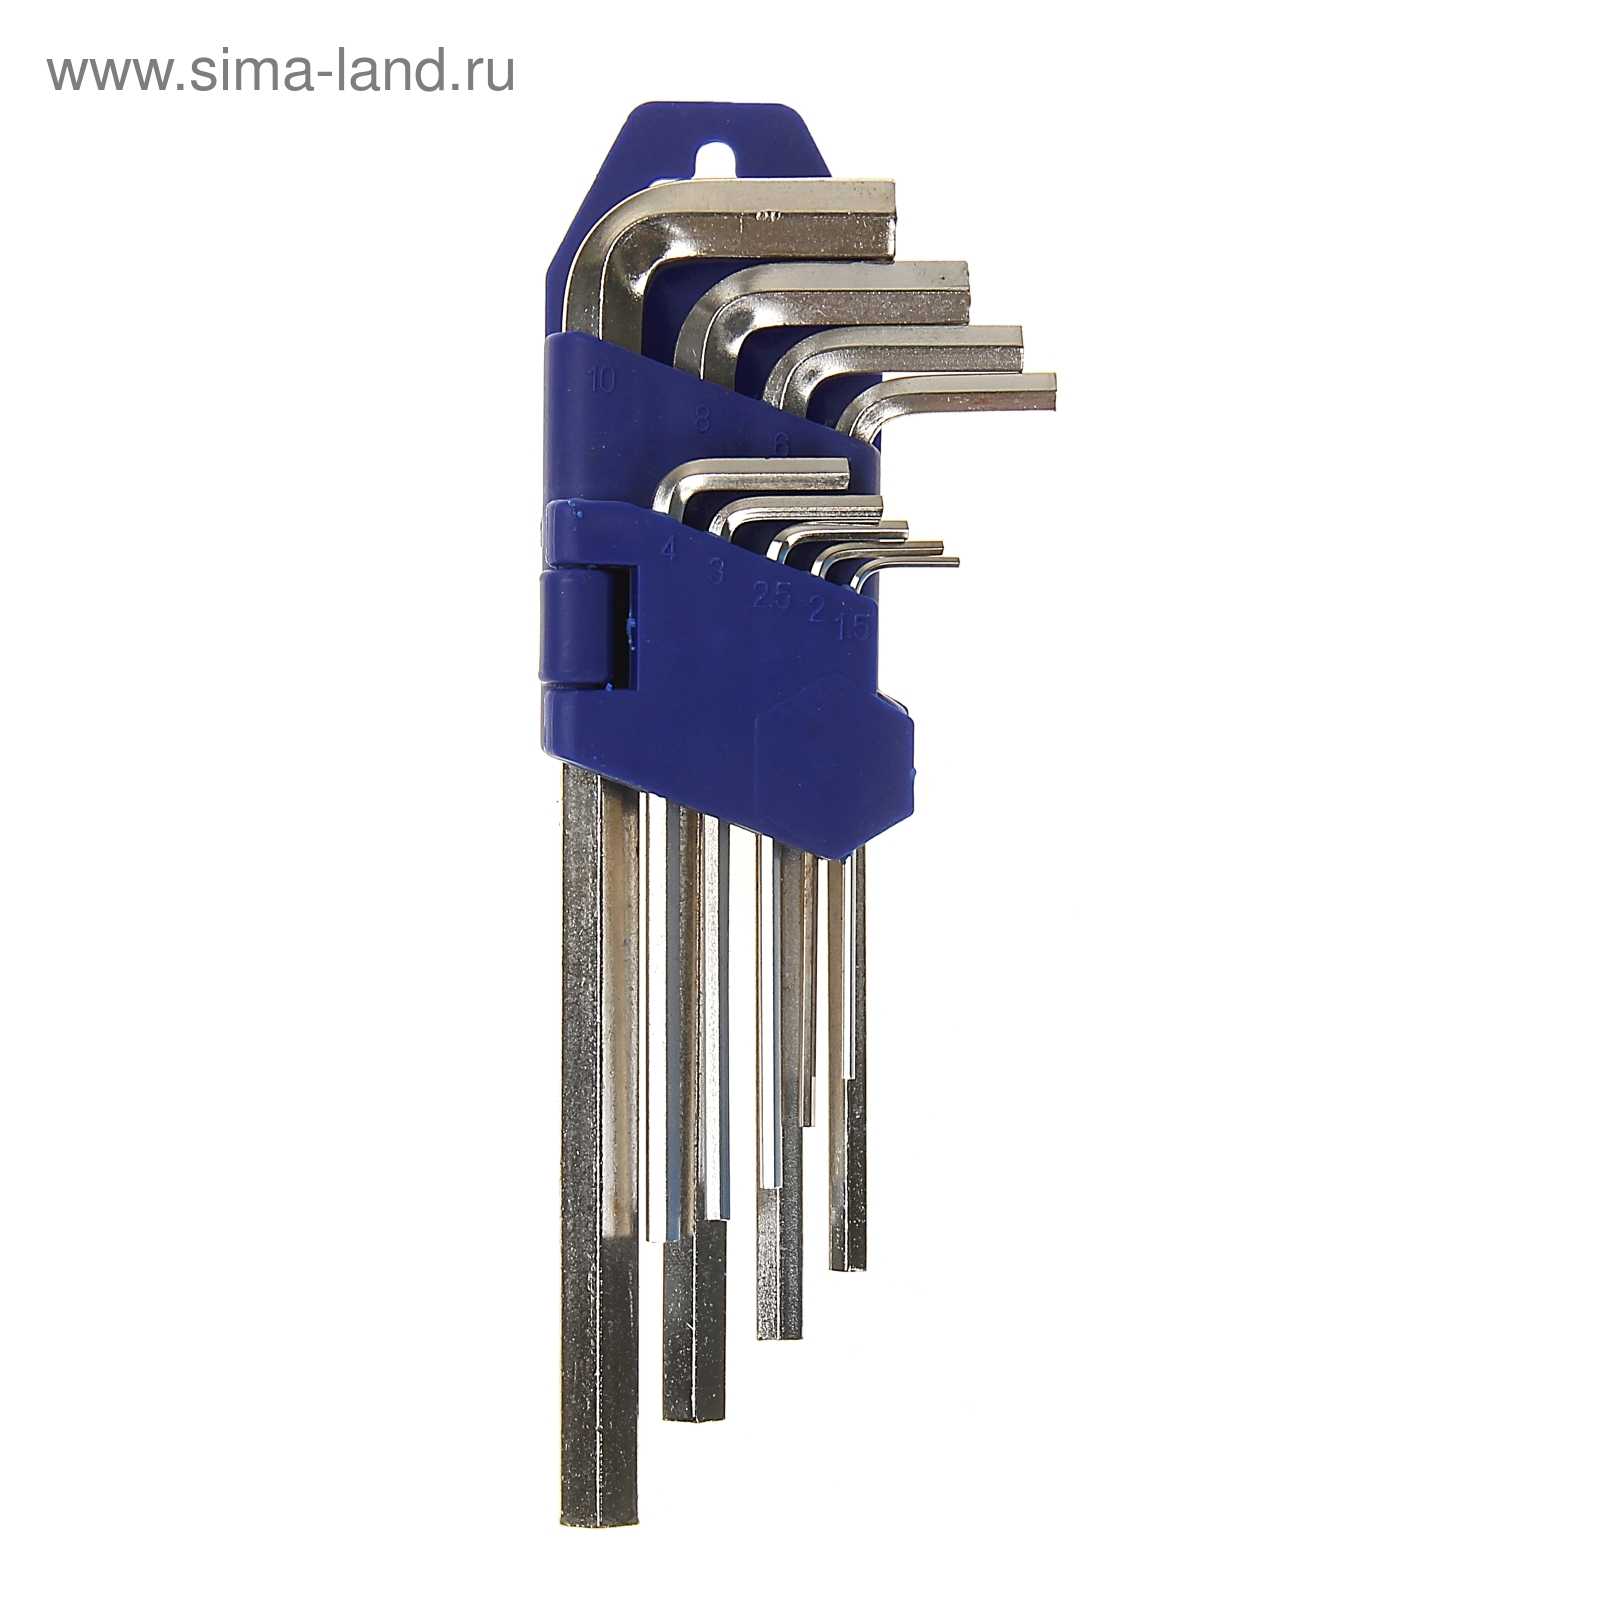 Набор ключей шестигранников TUNDRA comfort, 1.5 - 10 мм 9 штук, удлиненные